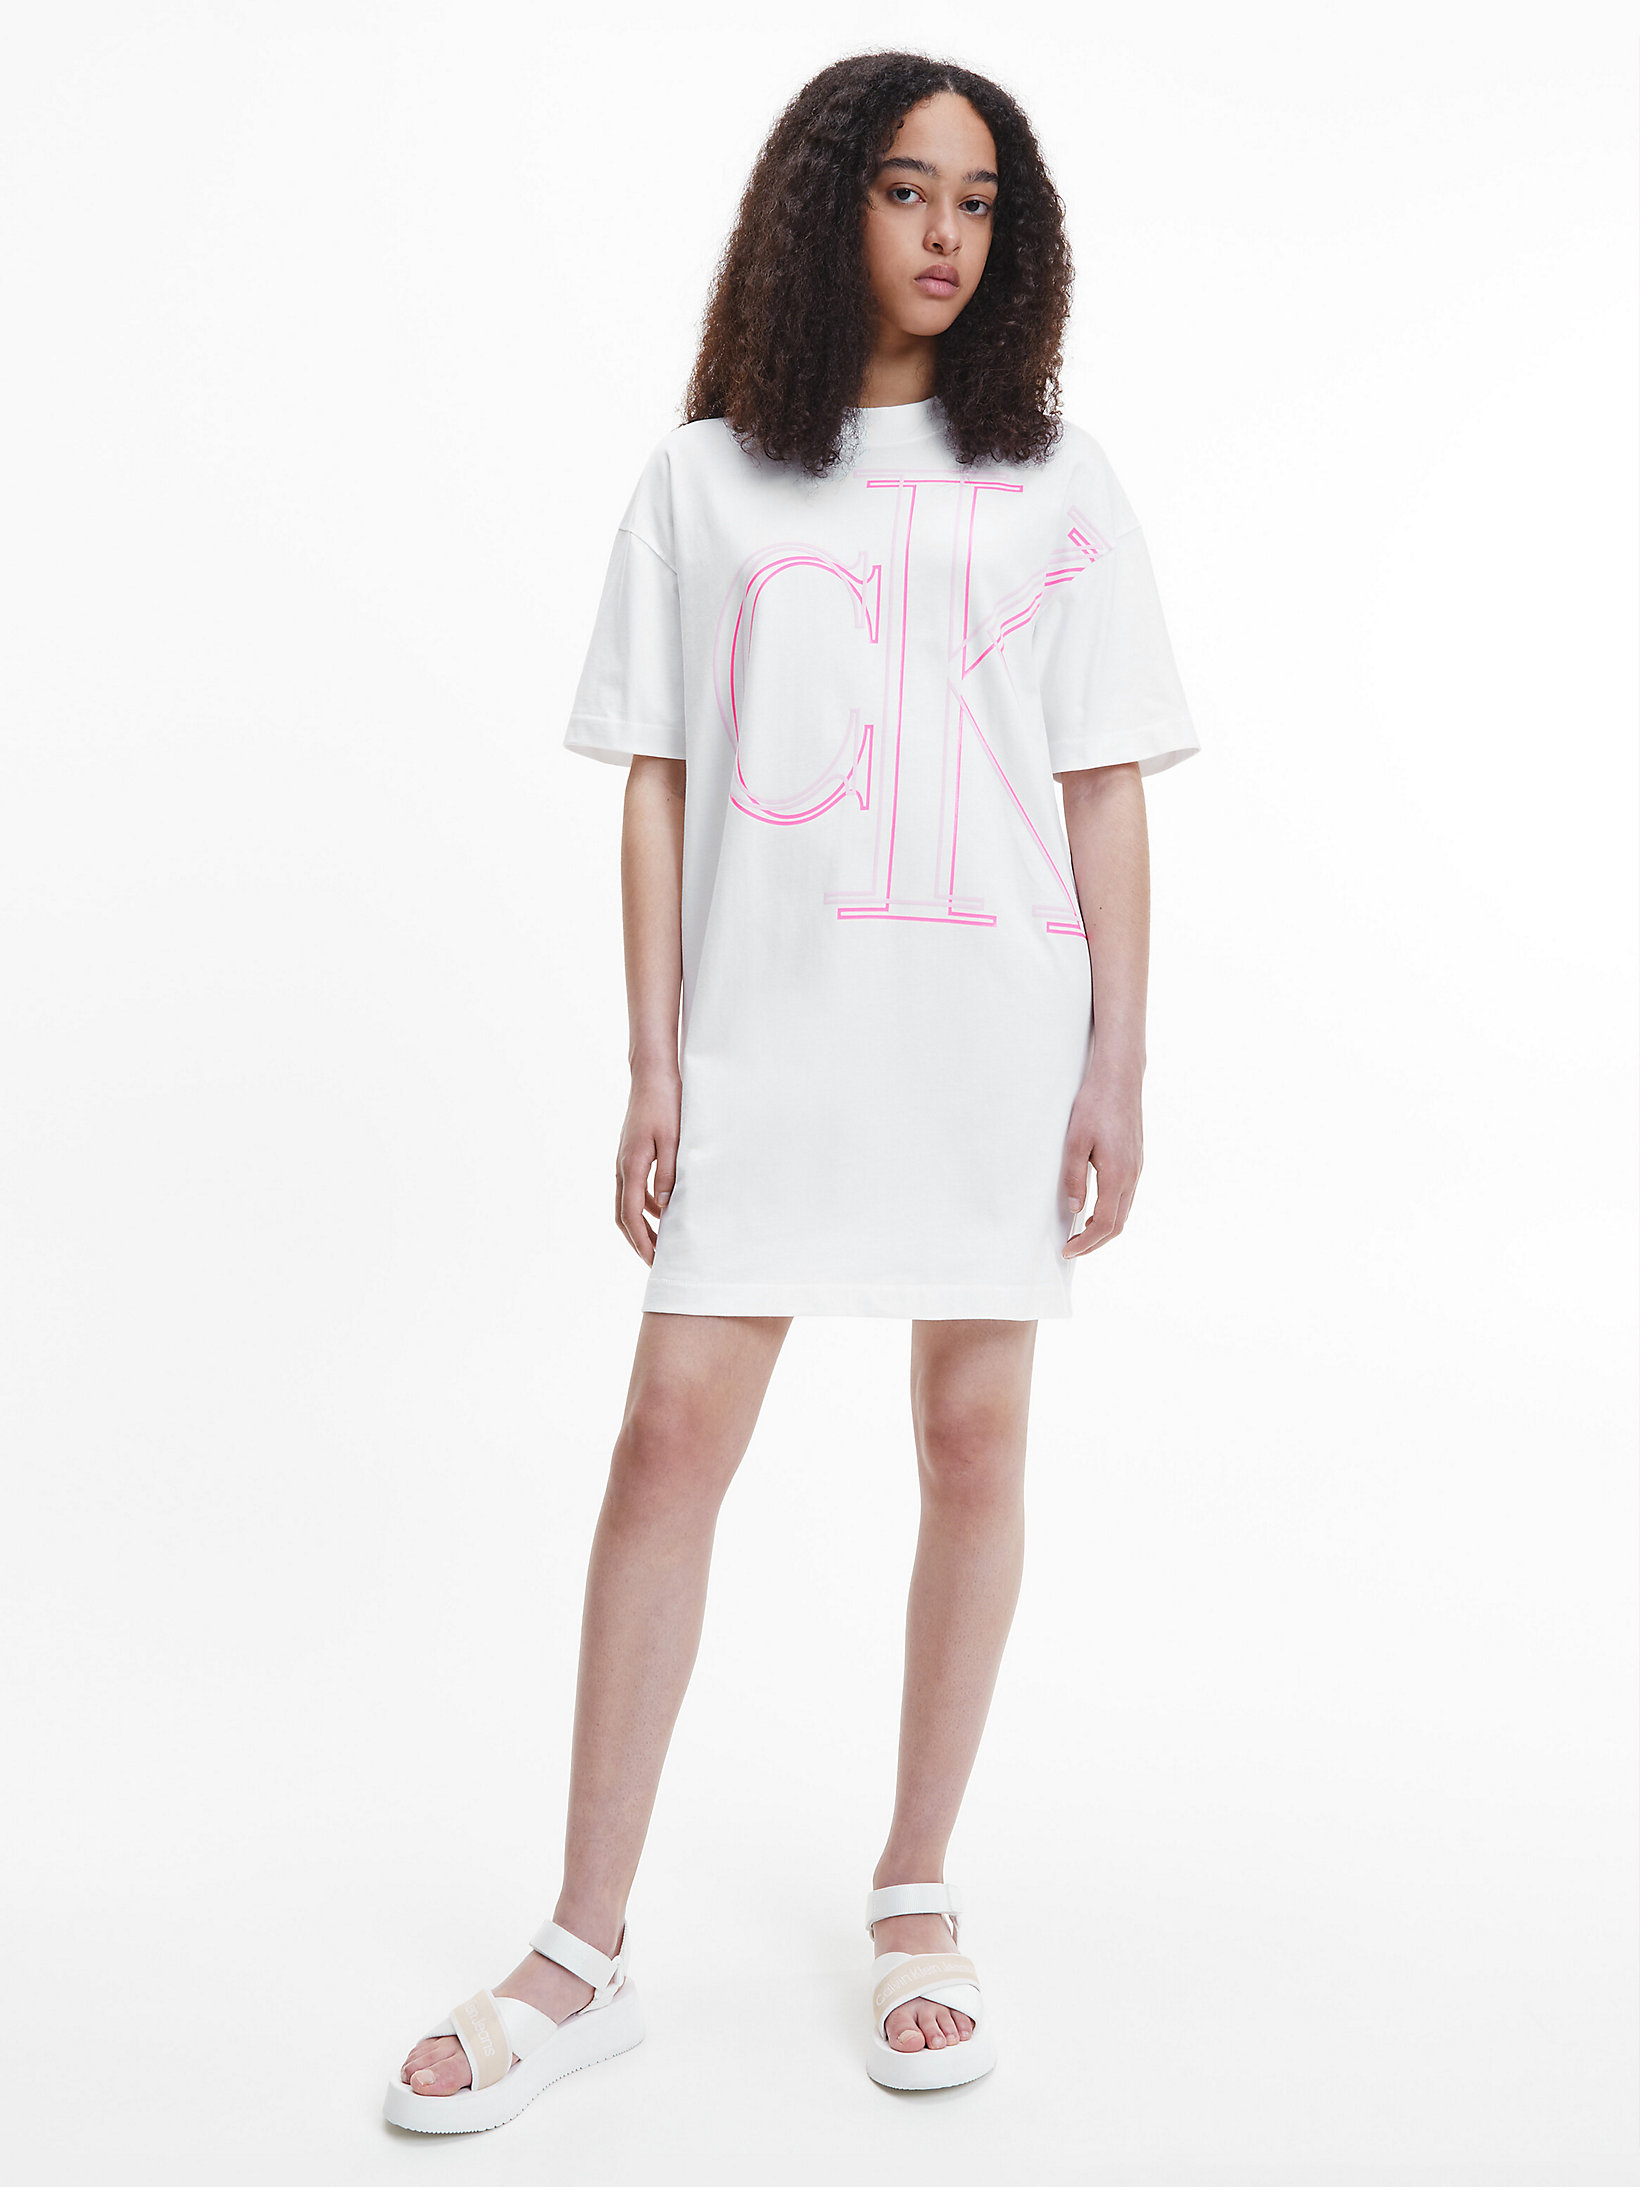 Abito A T-Shirt Con Monogramma Dal Taglio Relaxed > Bright White > undefined donna > Calvin Klein